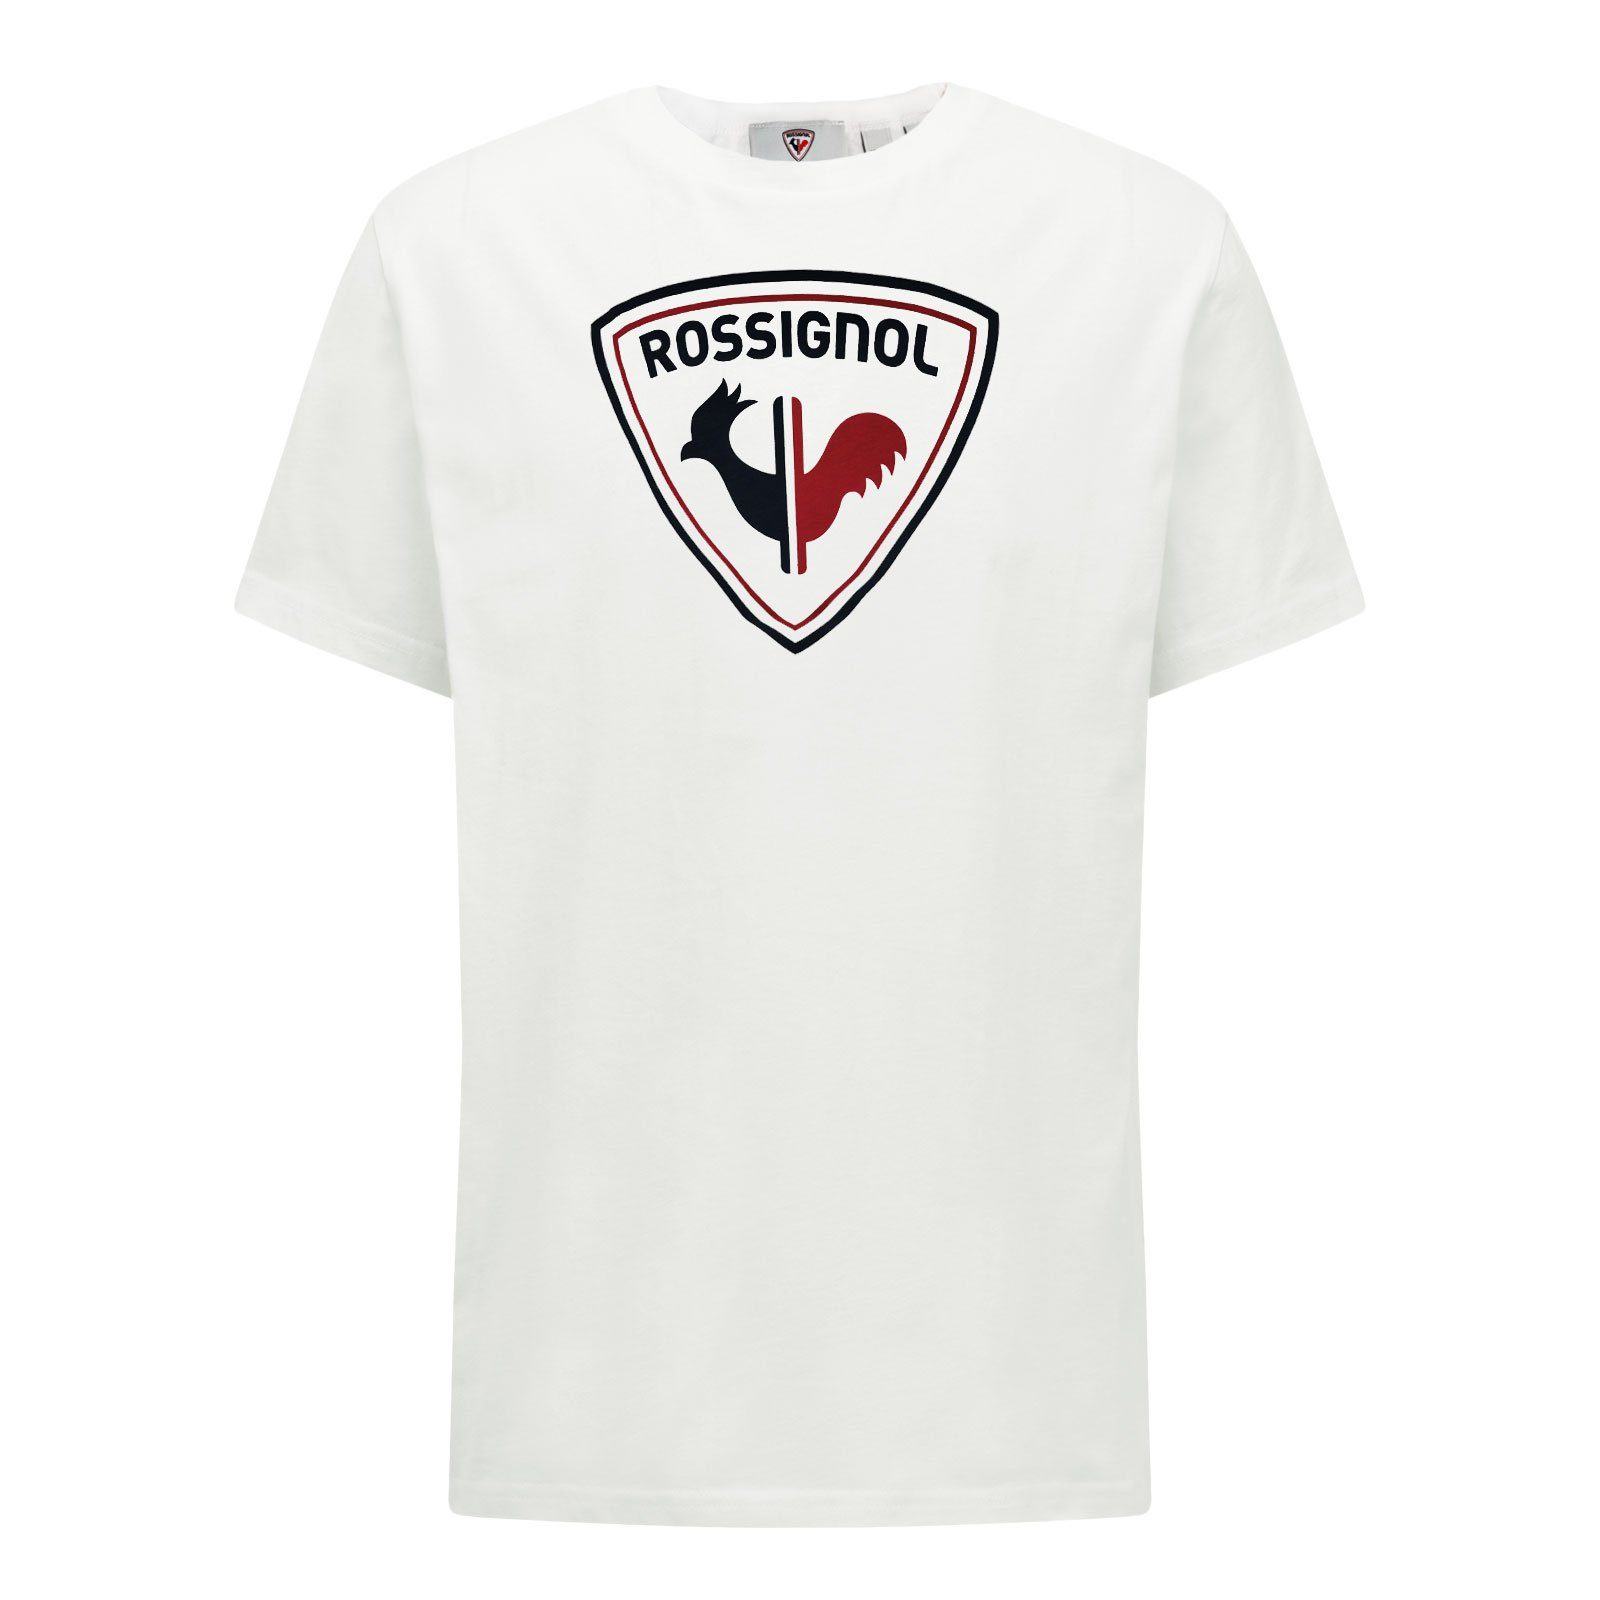 Rossignol T-Shirt 100 Tee Hahn-Grafik white Rossi Logo mit markentypischer